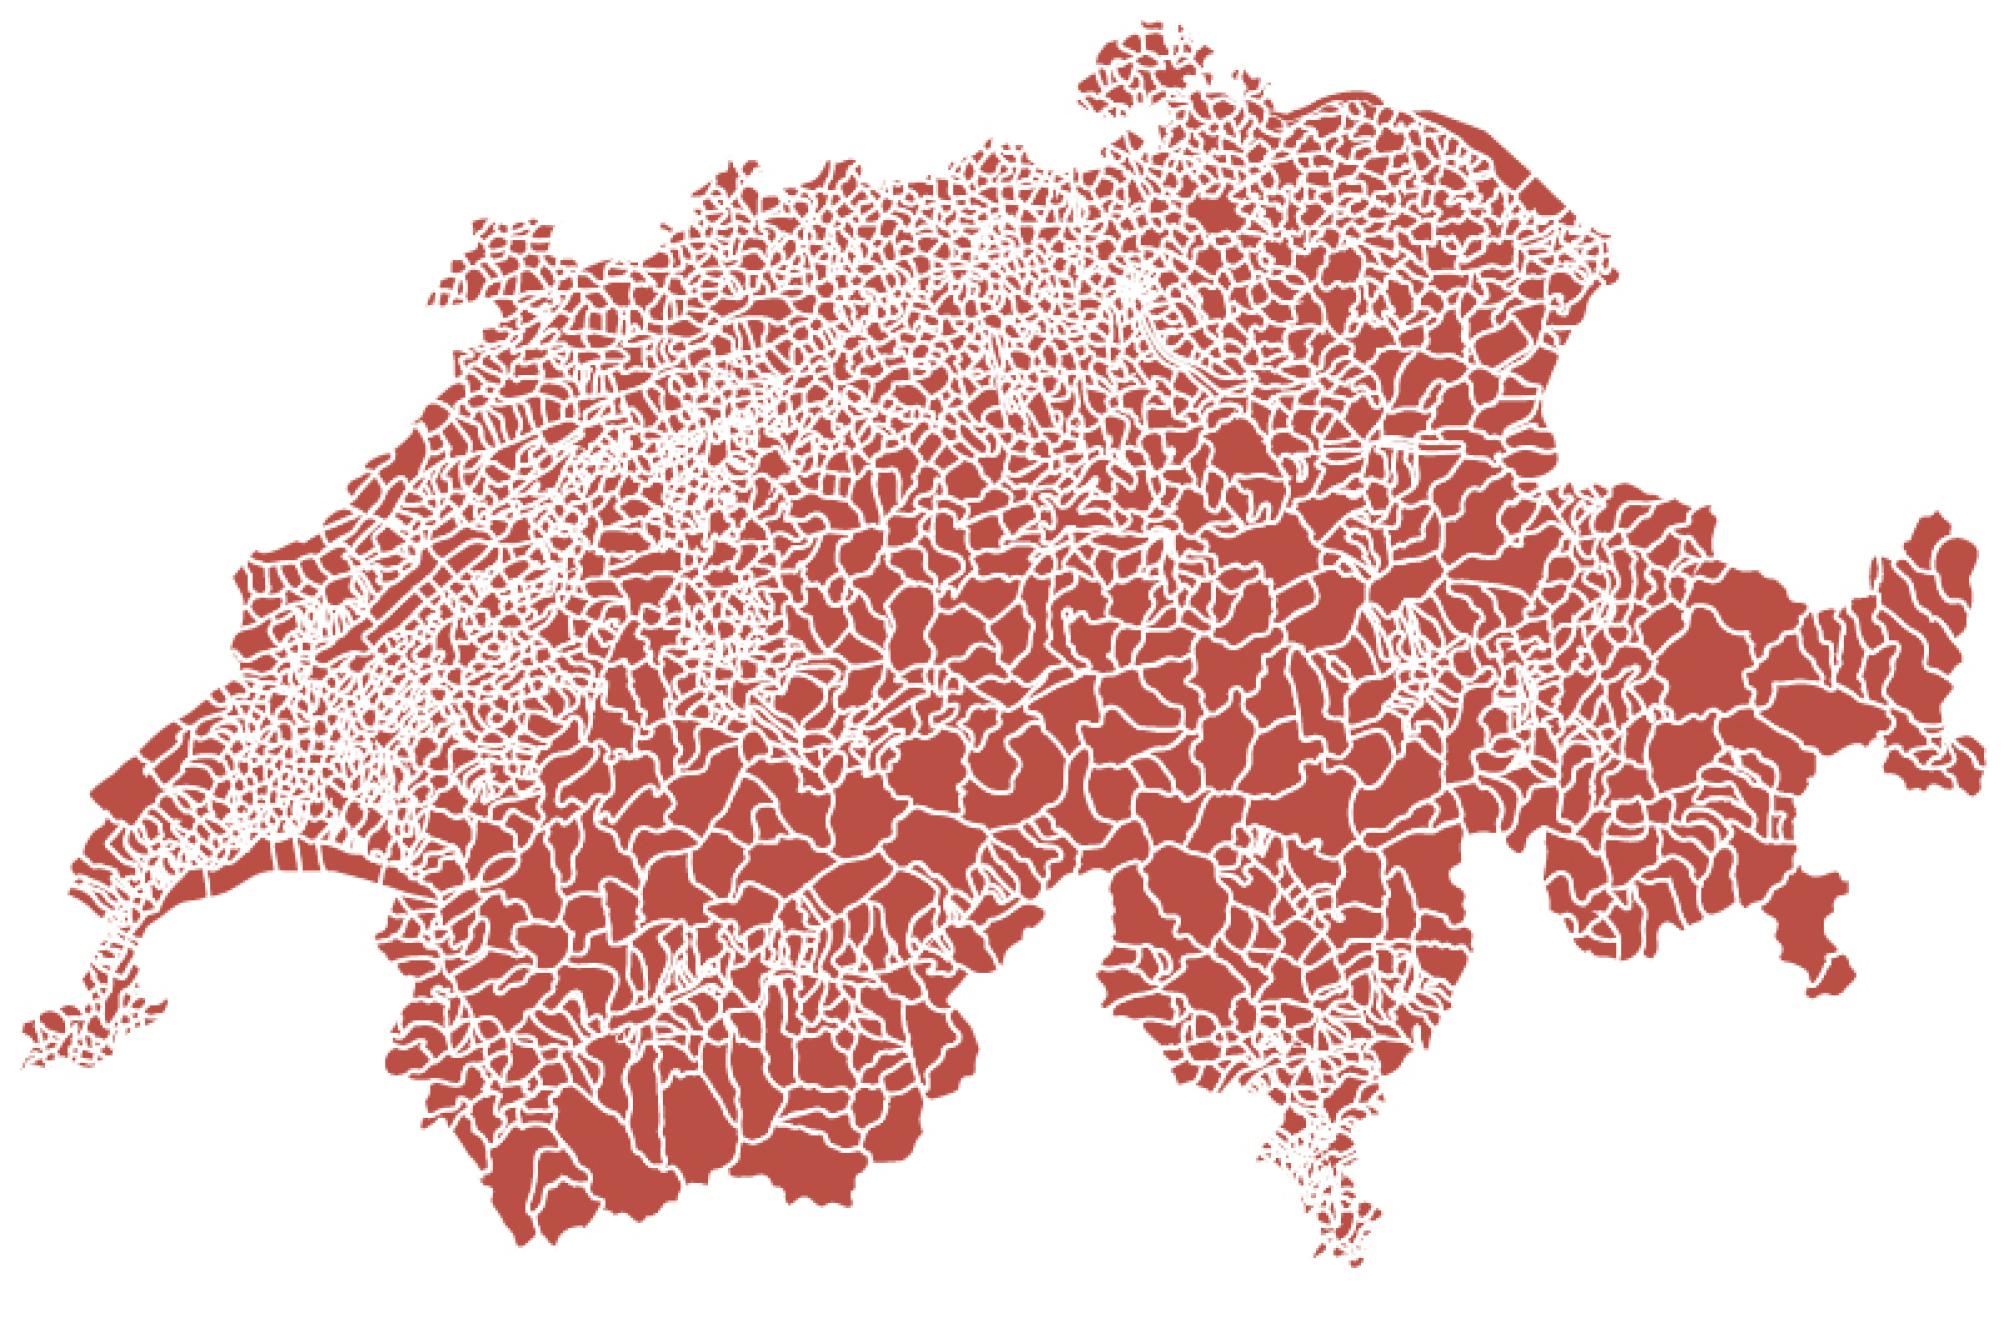 La terza cartina mostra il reticolato a maglia fine dei confini comunali.